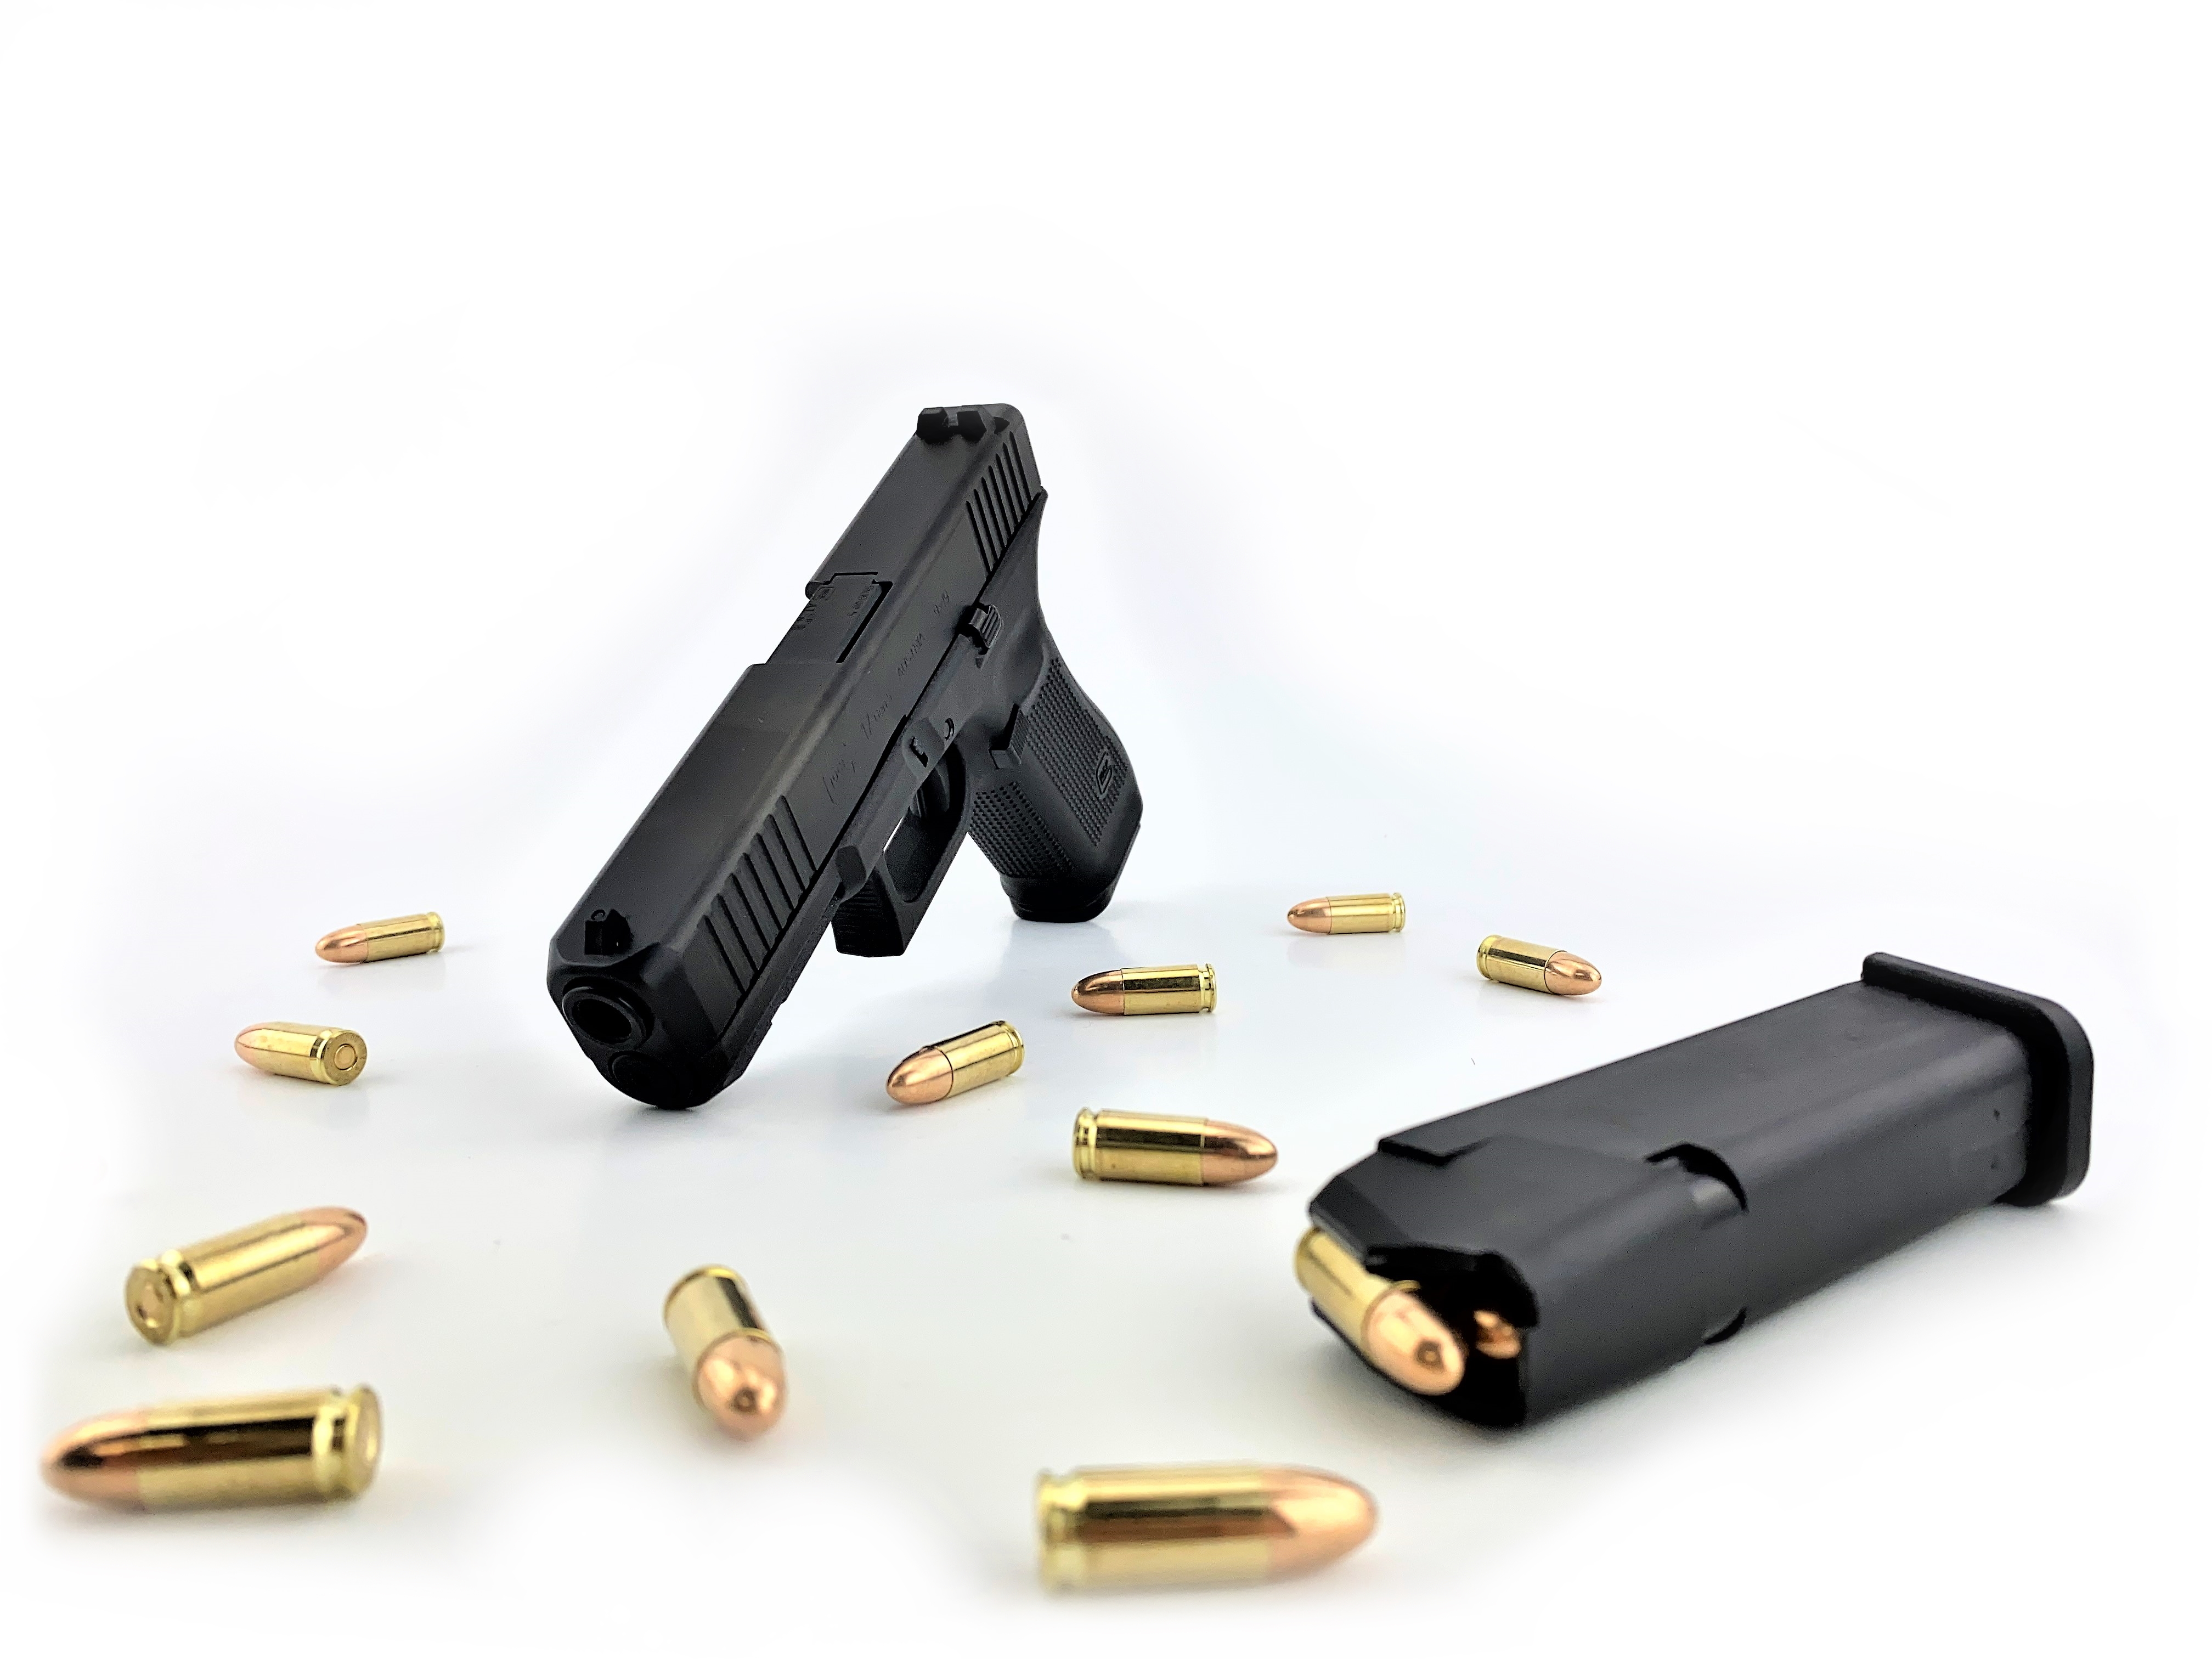 Glock 17 gen5 mit Magazin und 9mm Luger Patronen | F.A.S.T. Onlineshop